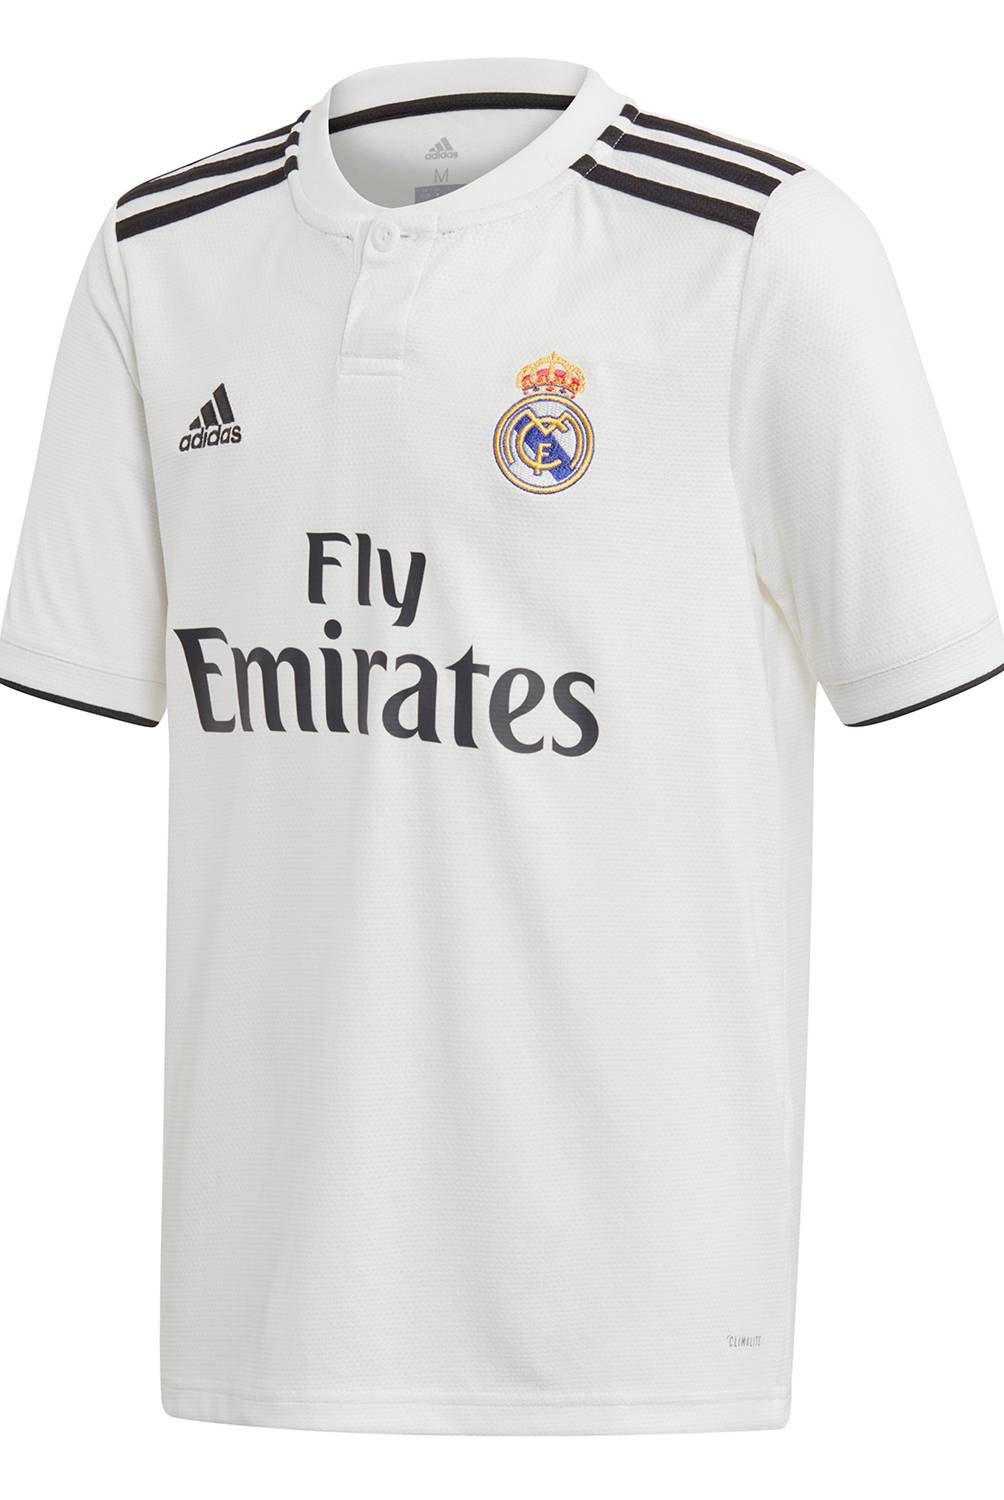 Adidas - Camiseta Real Madrid Niño